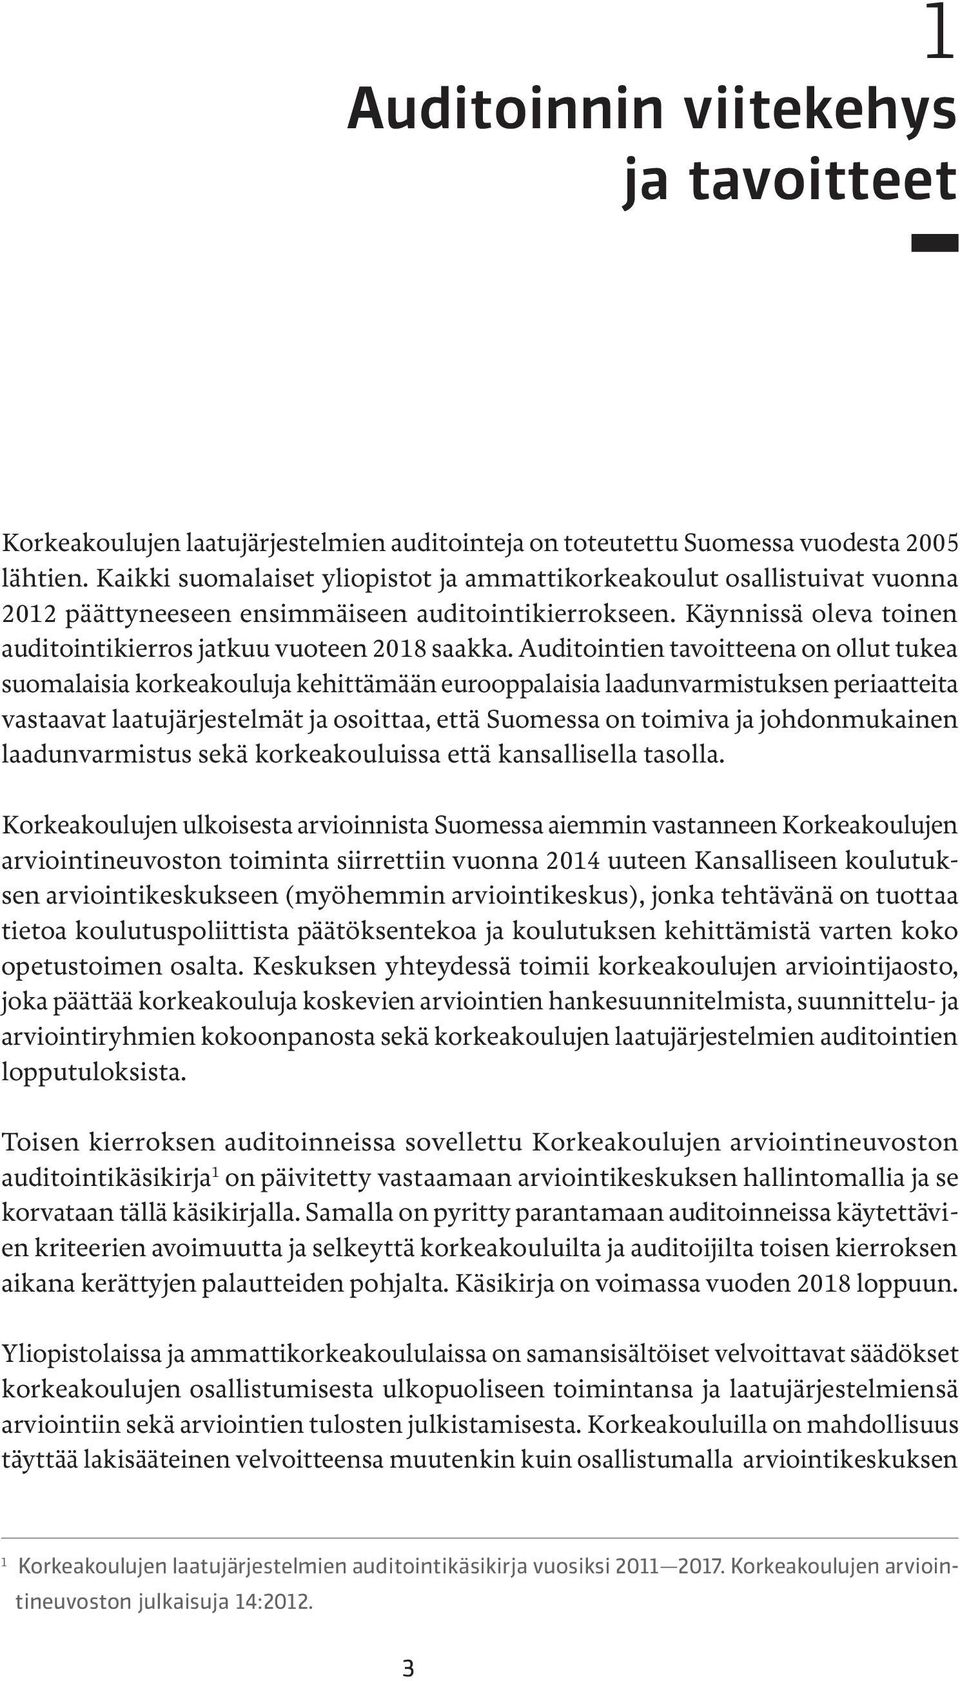 Auditointien tavoitteena on ollut tukea suomalaisia korkeakouluja kehittämään eurooppalaisia laadunvarmistuksen periaatteita vastaavat laatujärjestelmät ja osoittaa, että Suomessa on toimiva ja